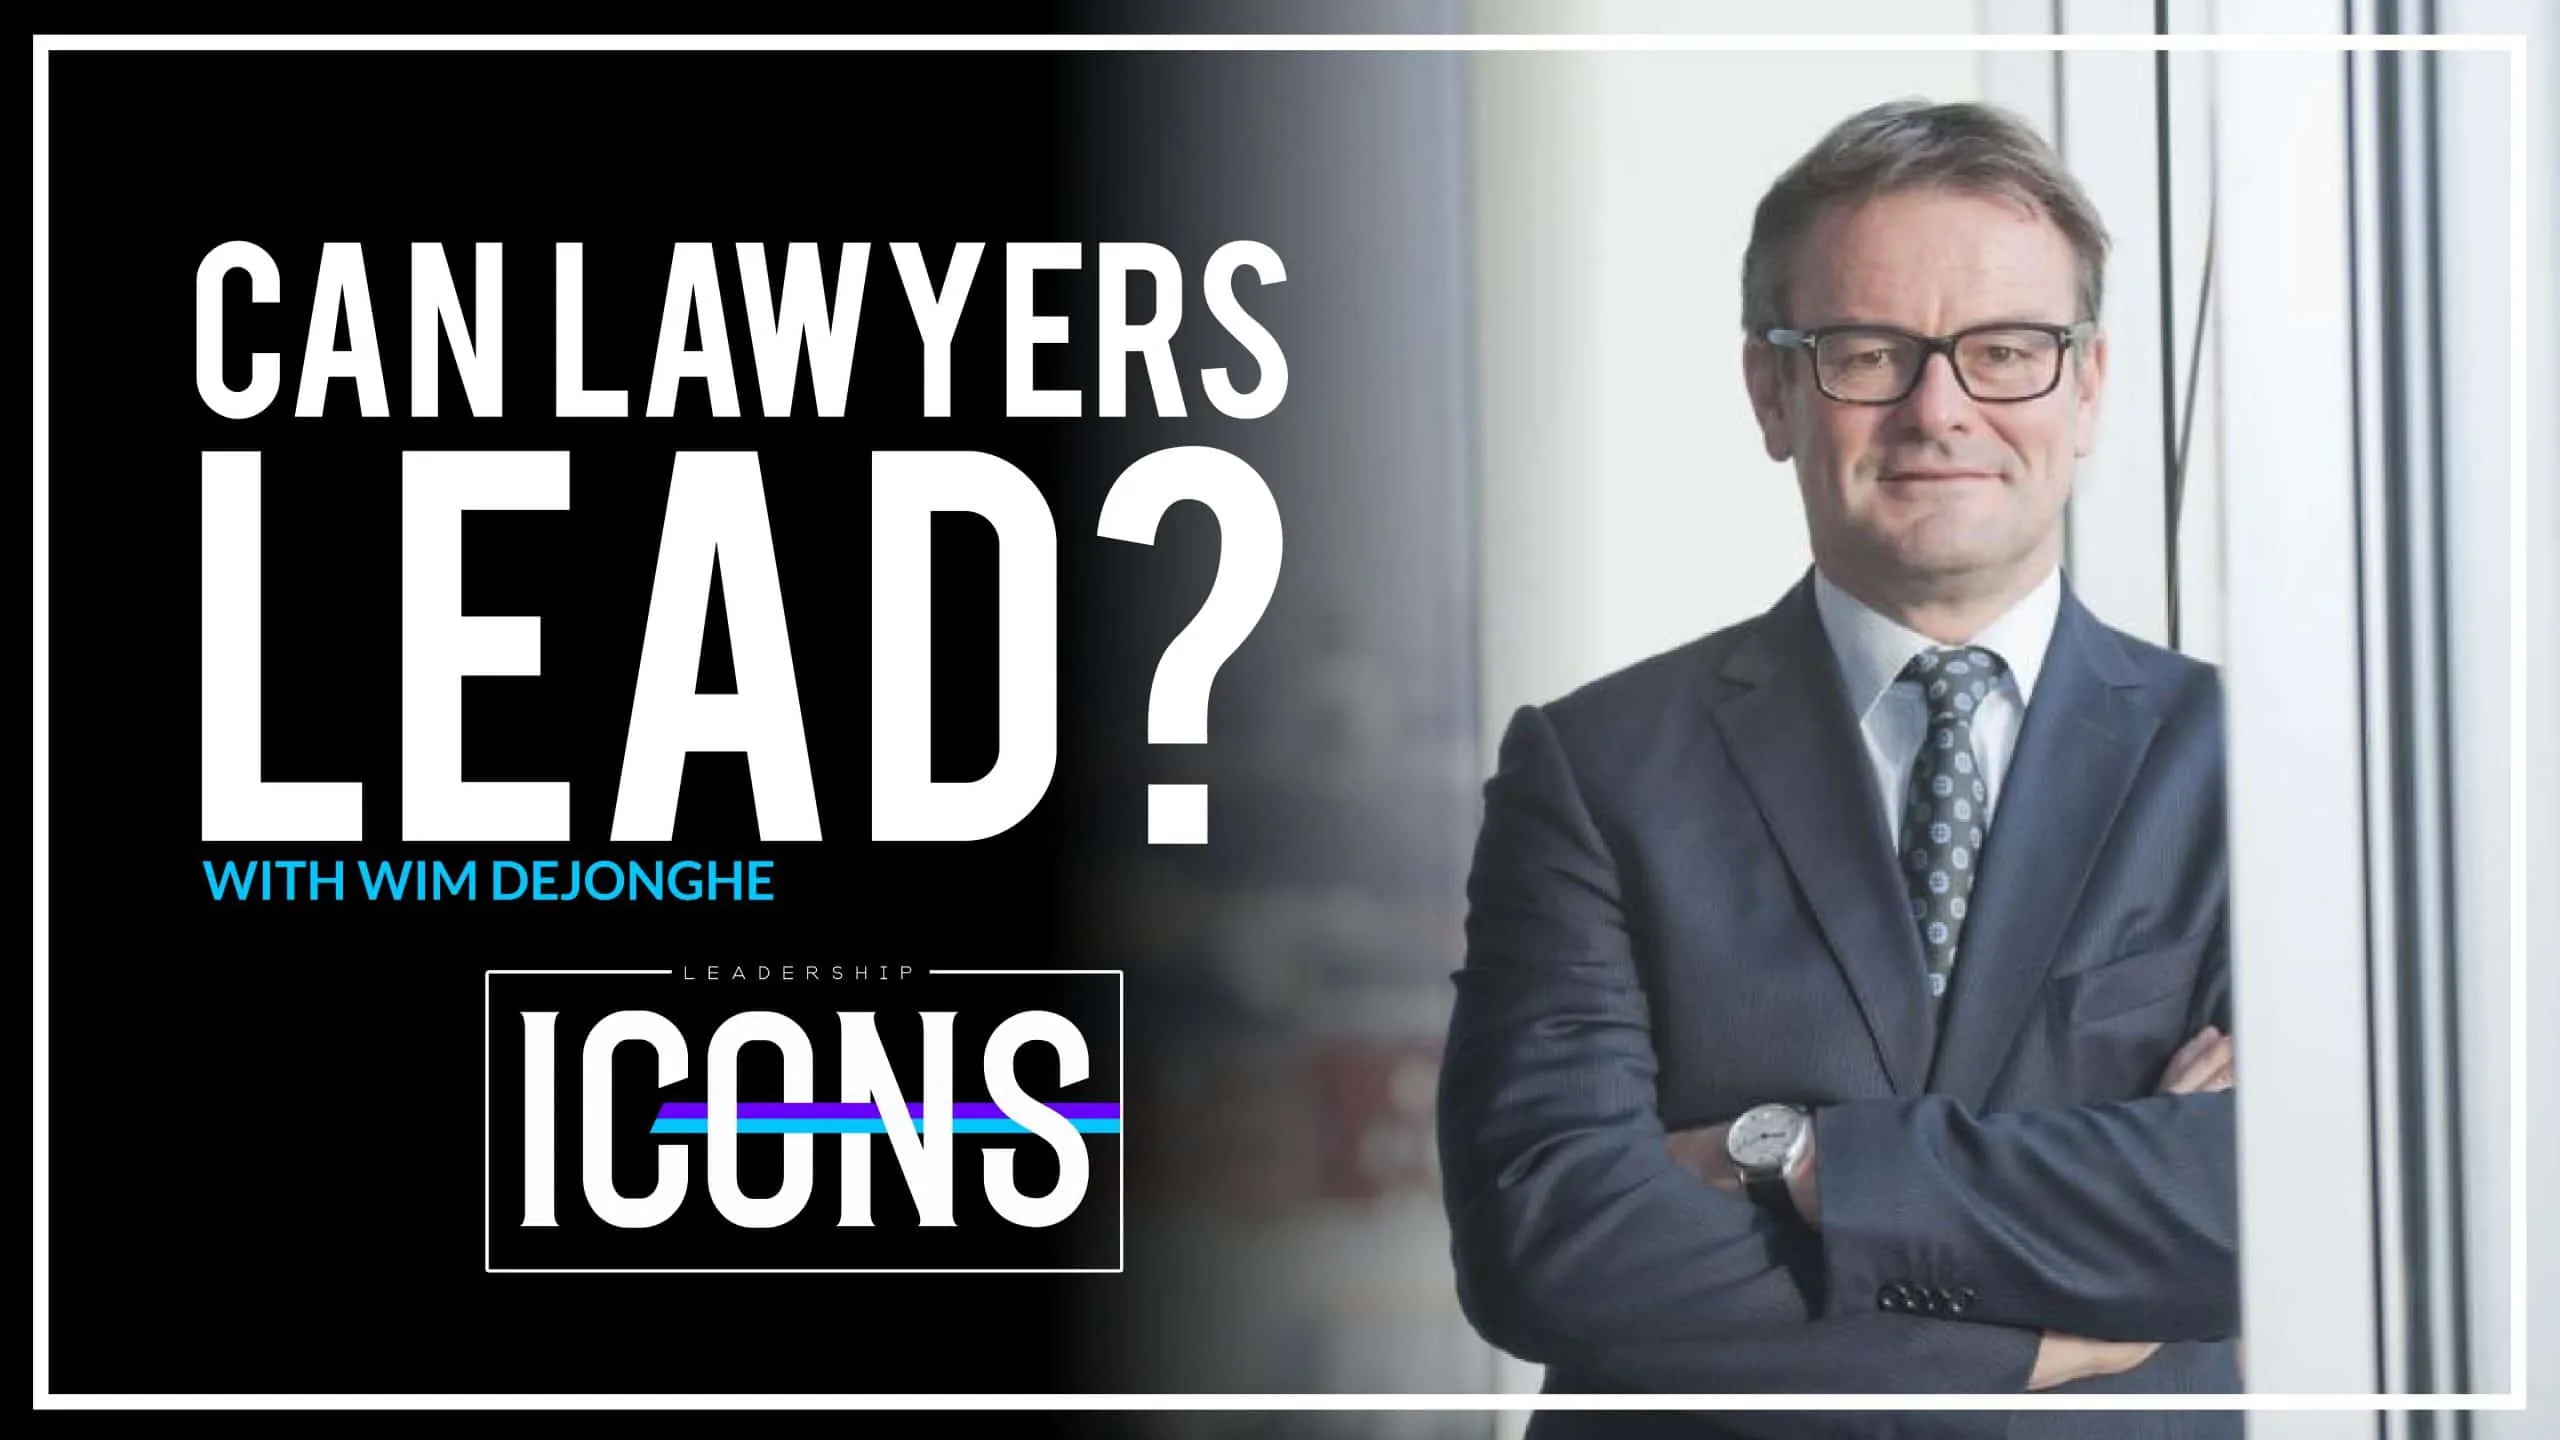 ¿Pueden los abogados liderar con Wim Dejonghe?